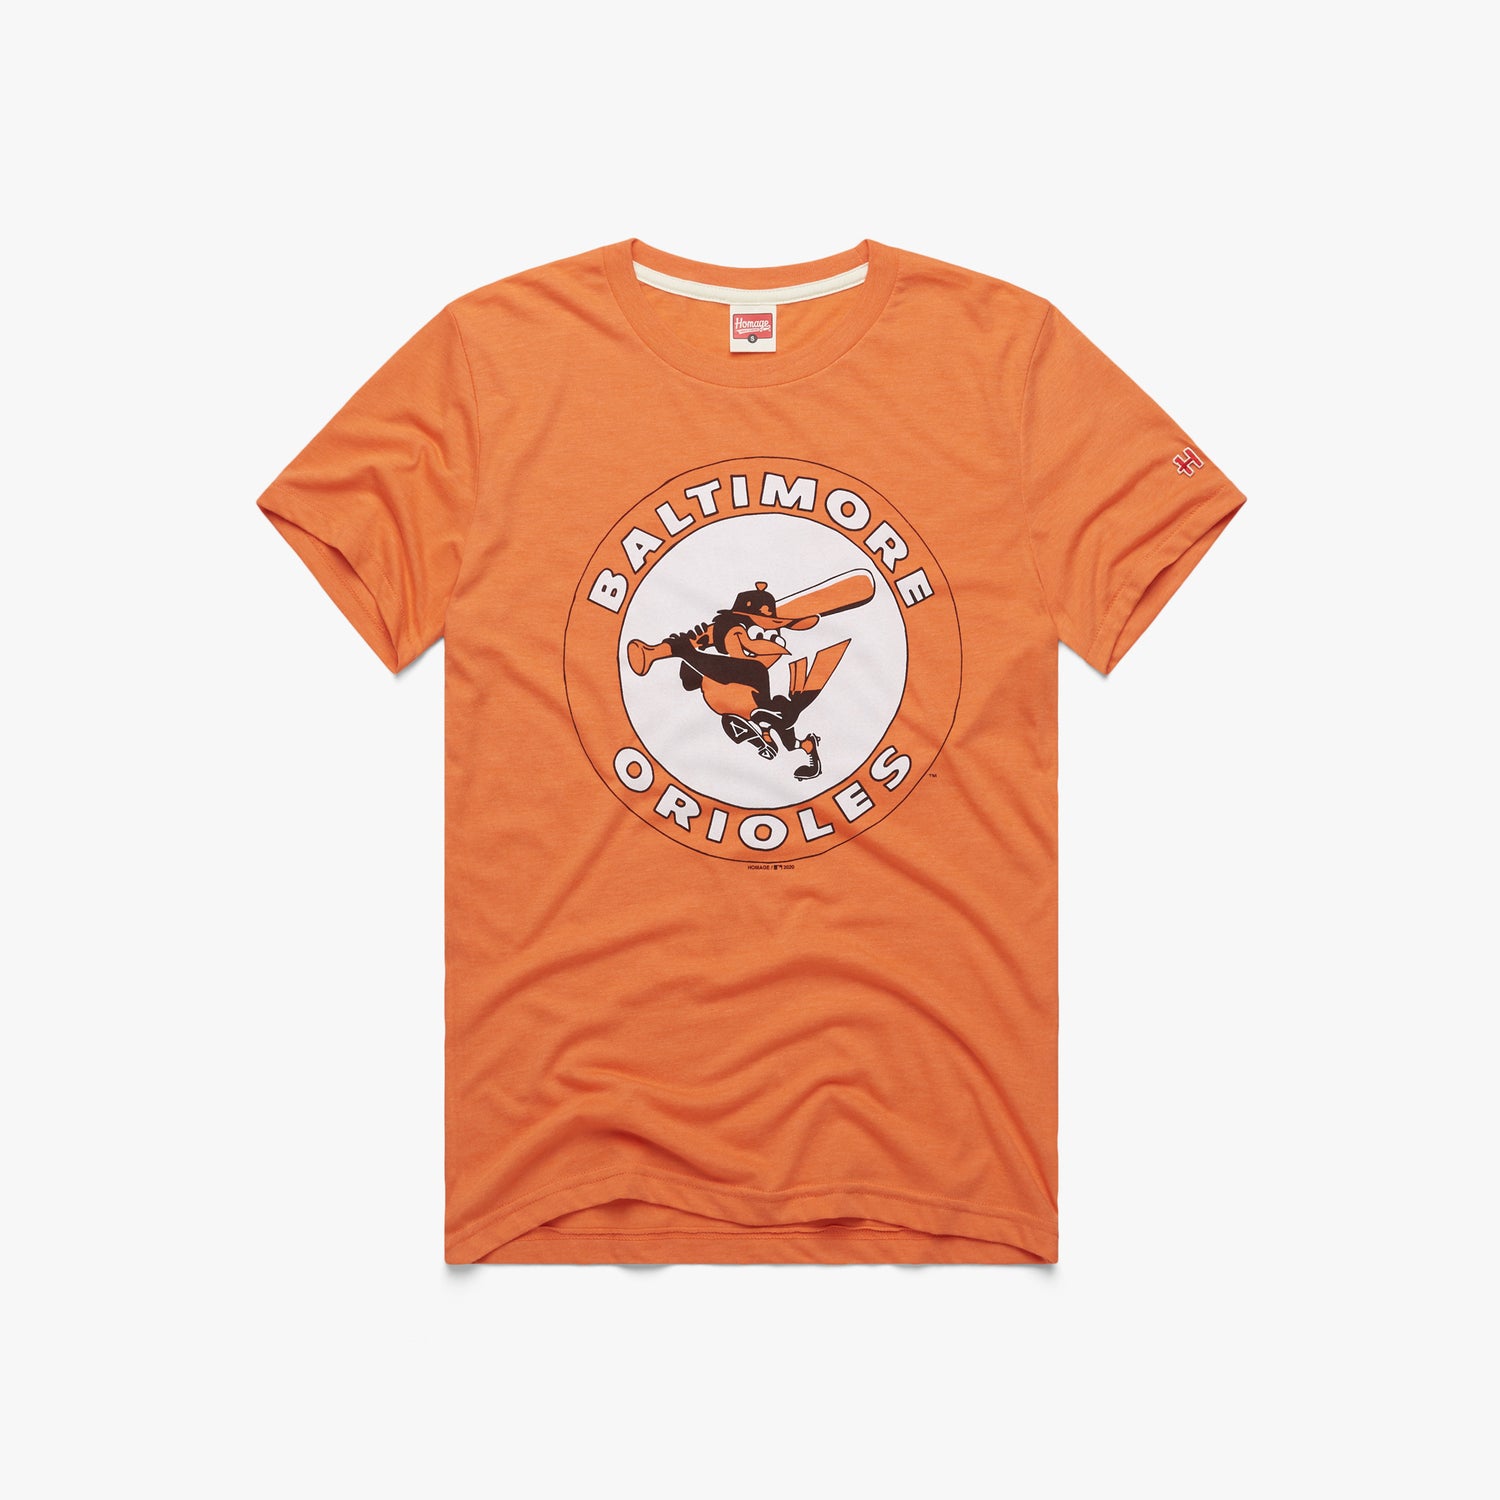 Baltimore Orioles Shirt Baltimore Orioles Giveaway Shirt Baltimore